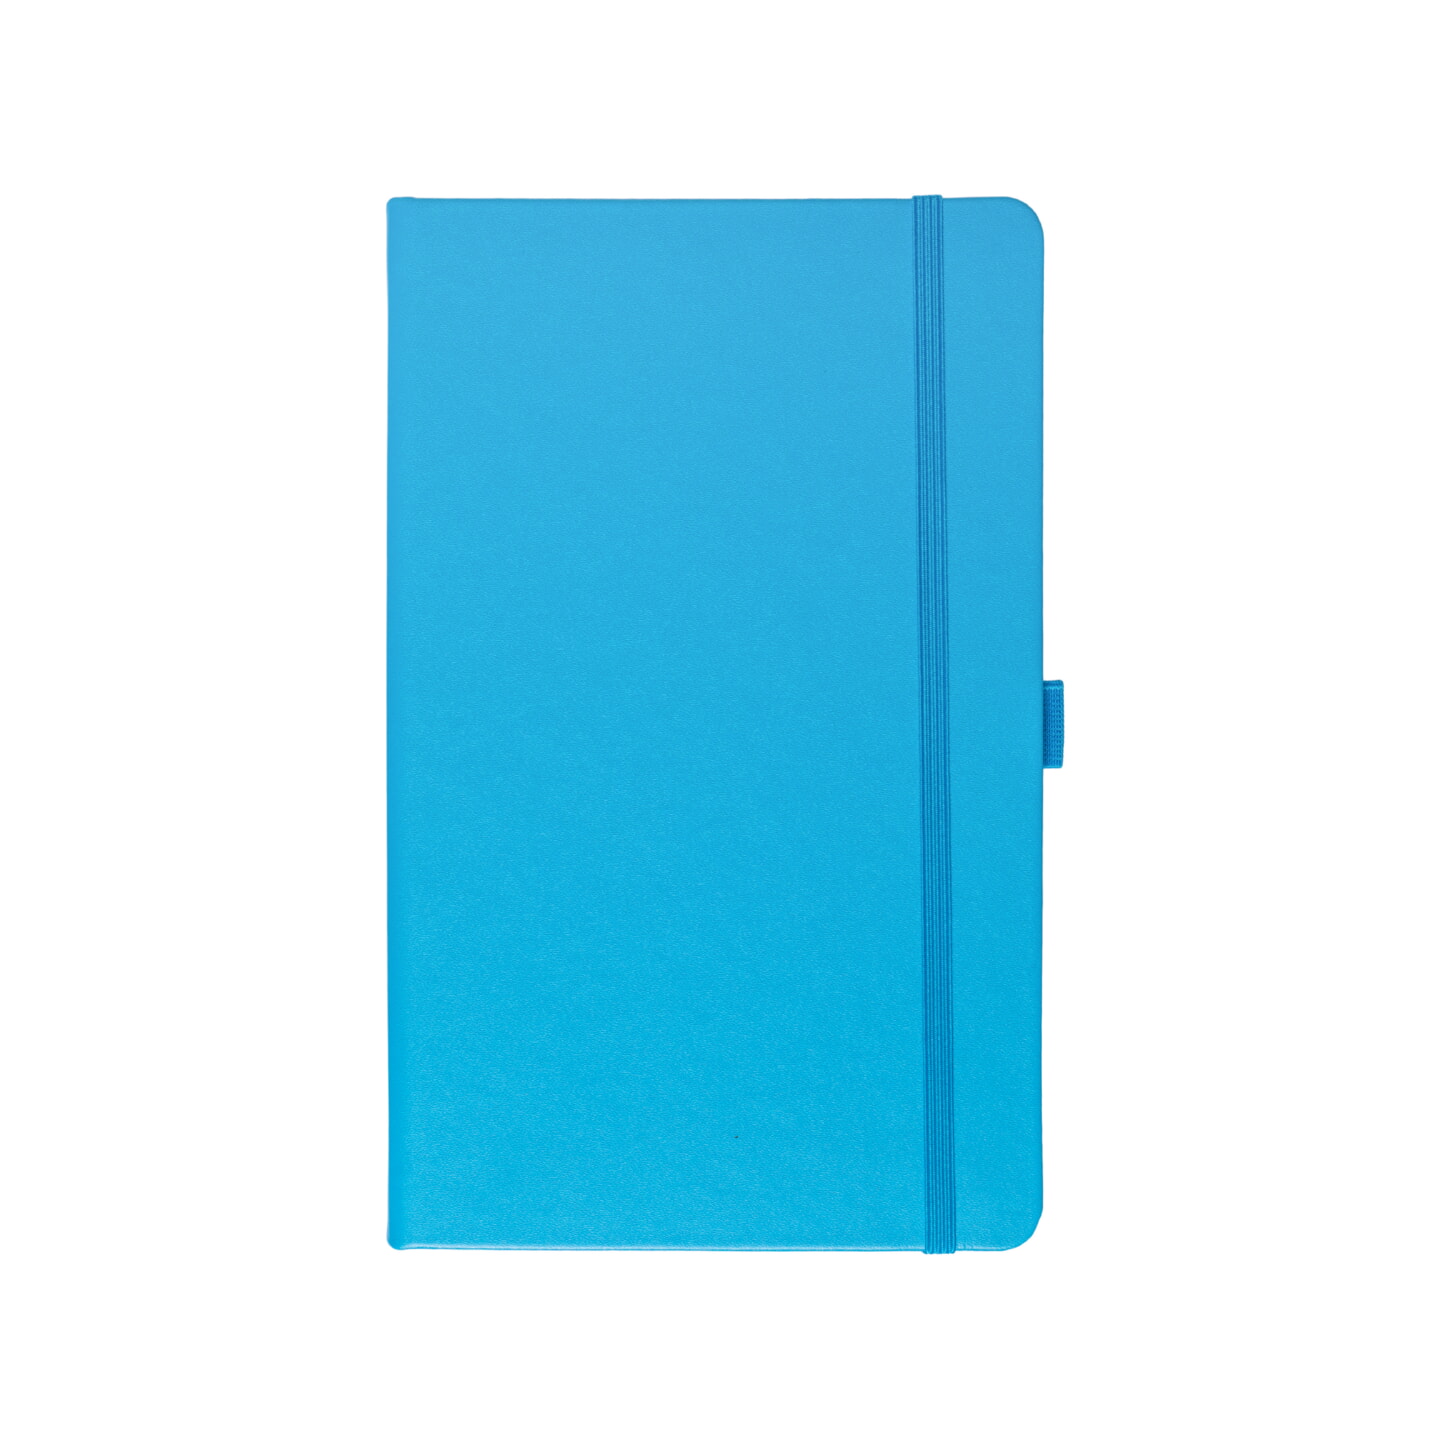 Блокнот для зарисовок Sketchmarker 140г/кв.м 80л твердая обложка Синий Карибский 5 размеров в ассортименте